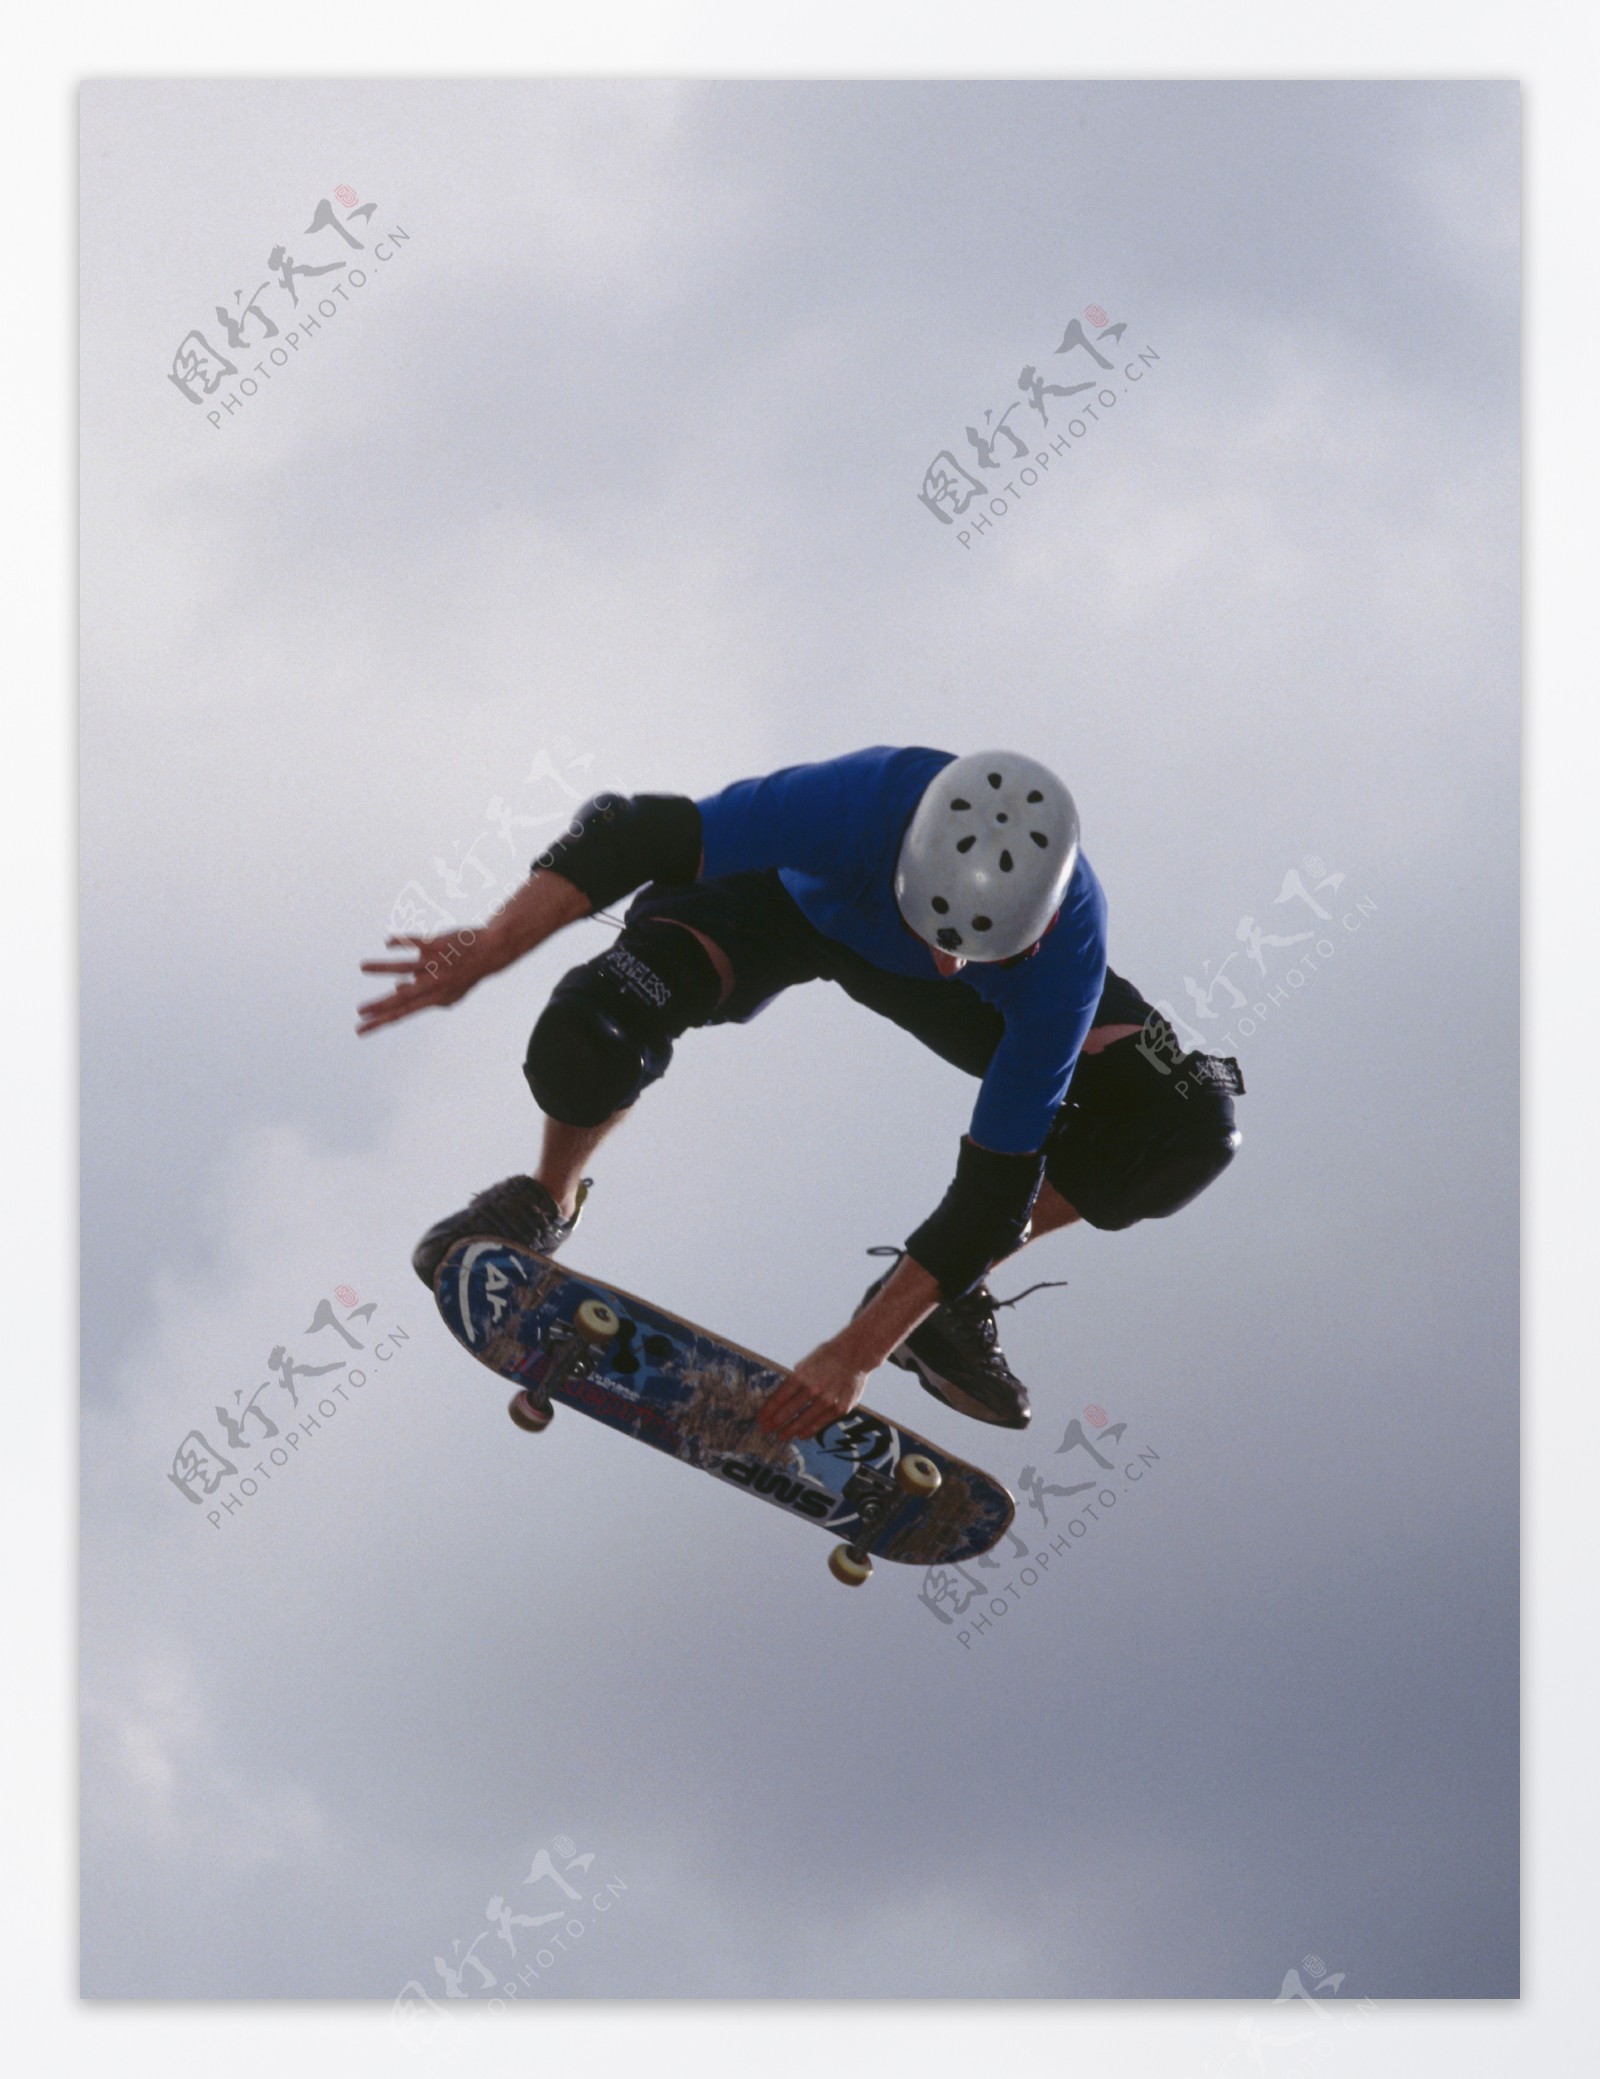 腾空飞跃的滑板运动员图片